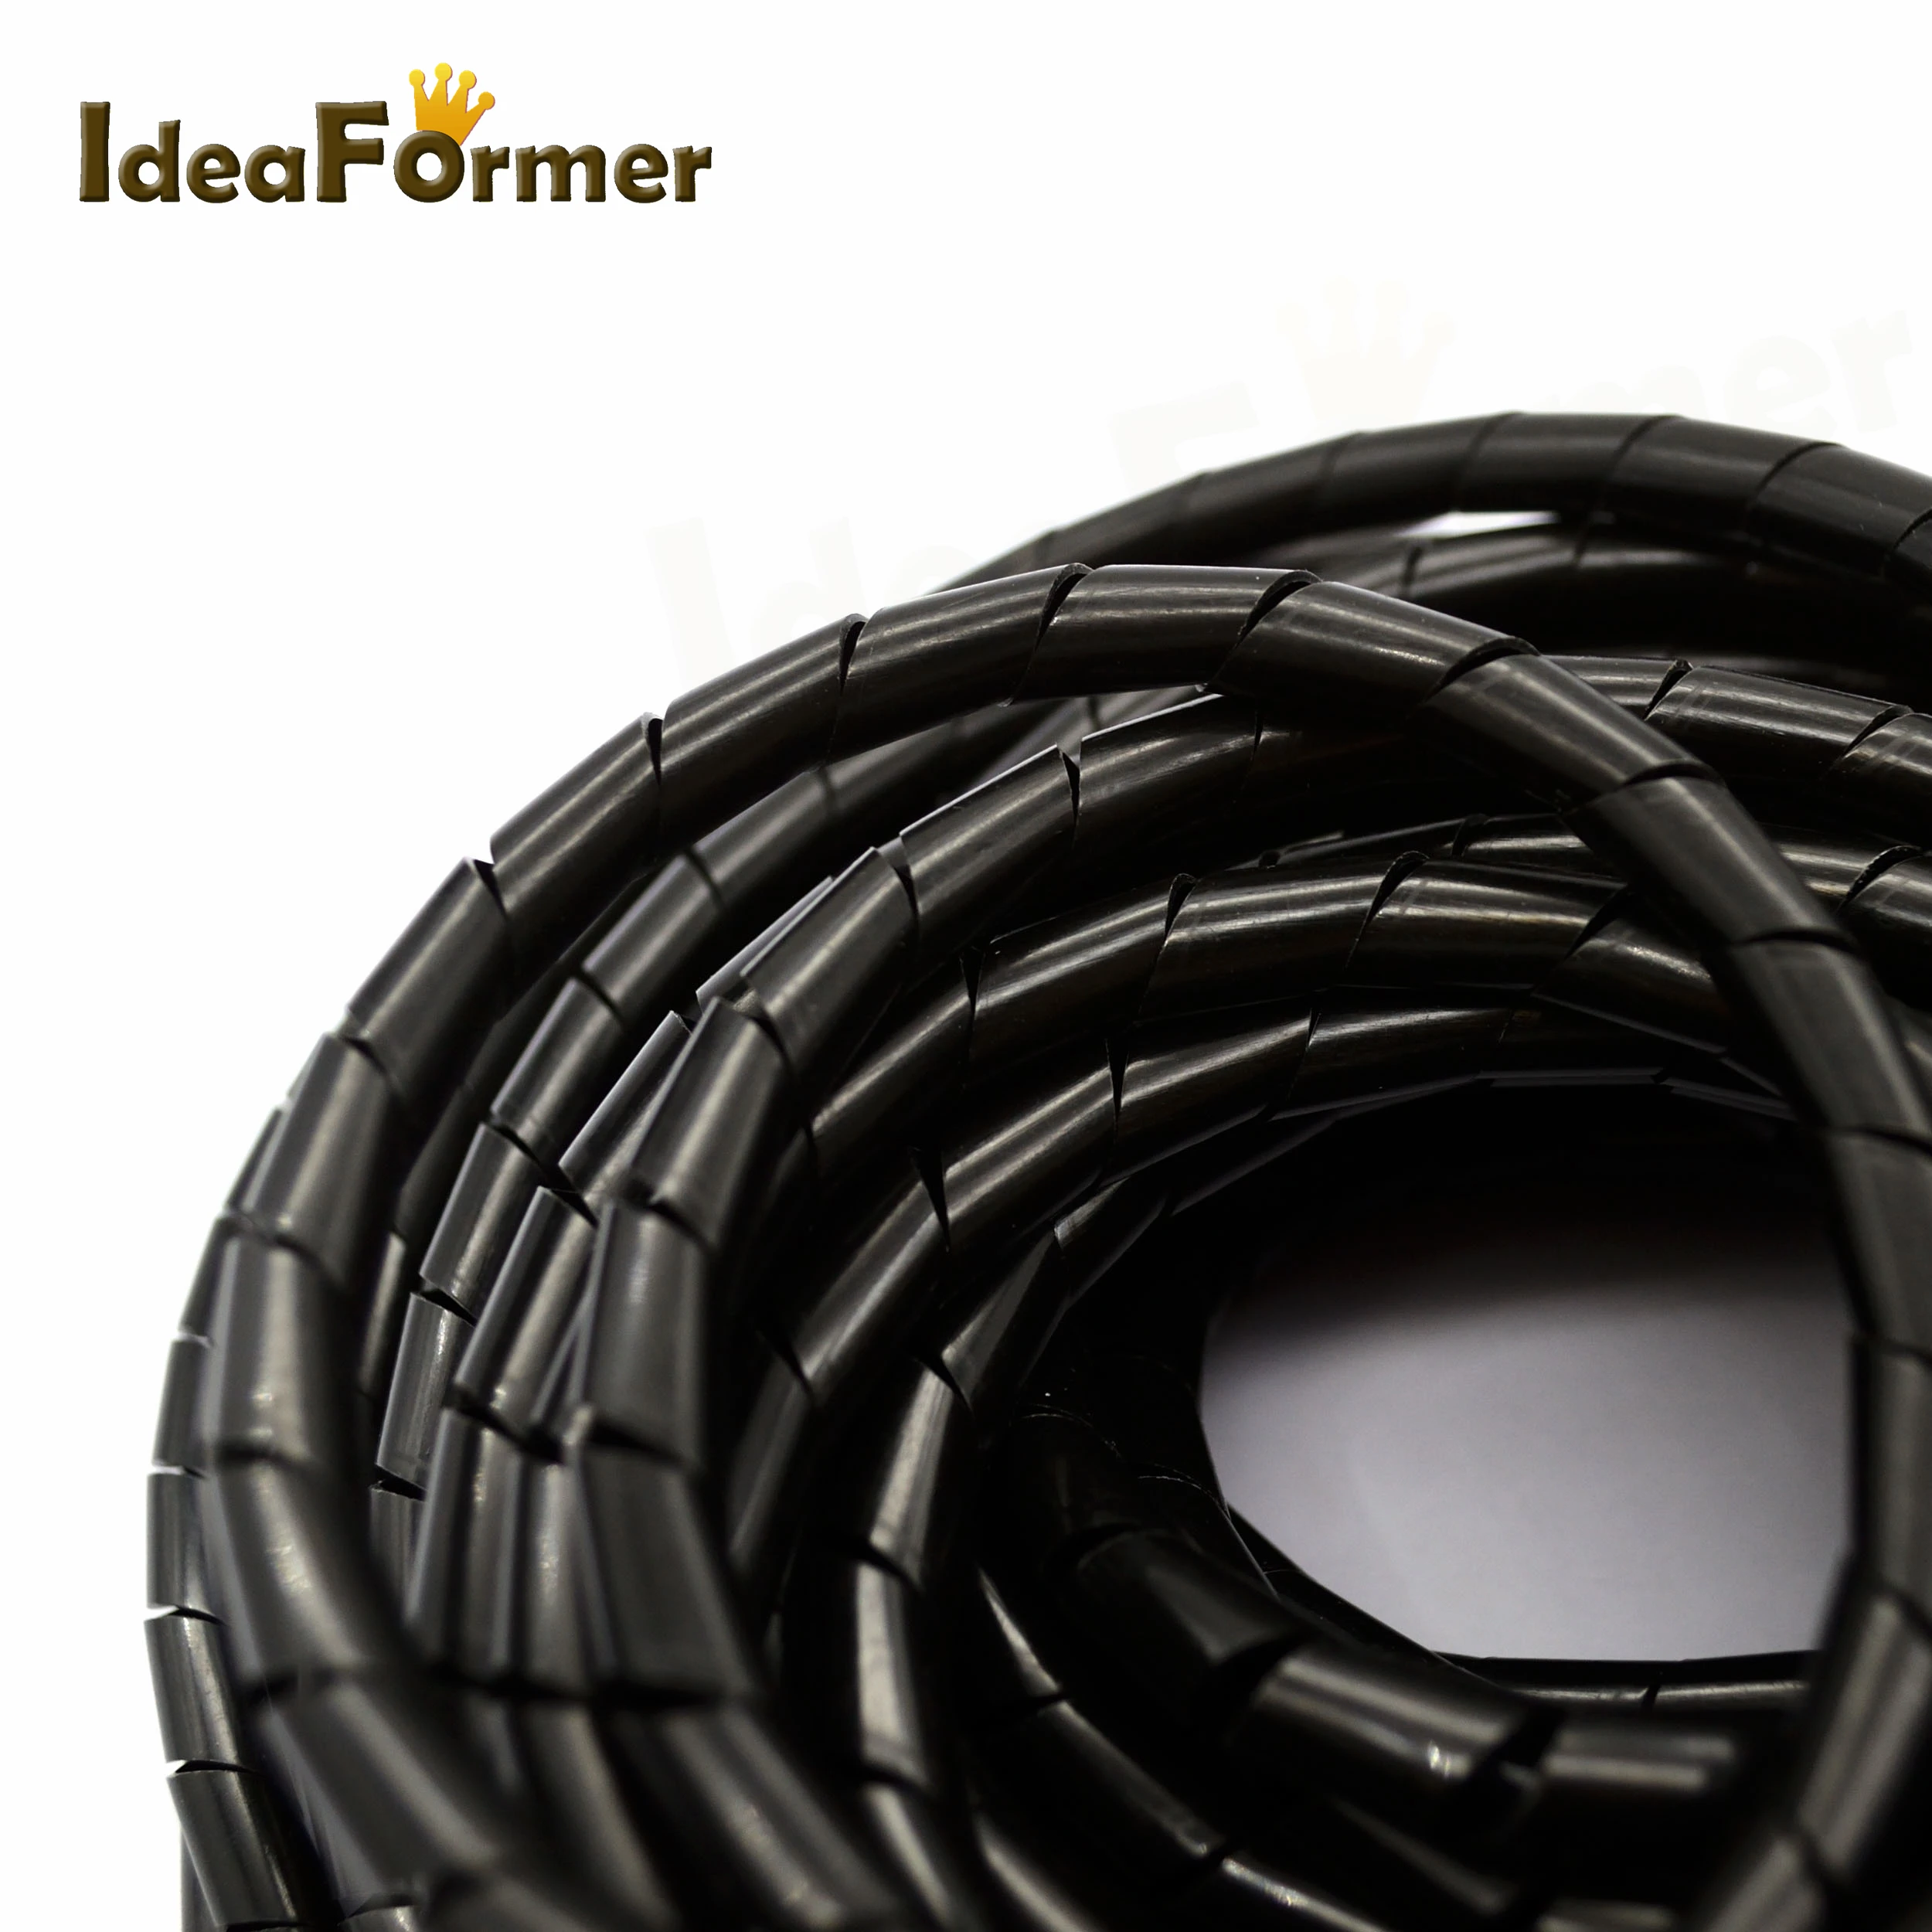 Спиральный шланг кабель провода обёрточная бумага трубка диаметр 8 мм 13 м часть PE Управление шнур черный для 3D принтеры части полиэтилен